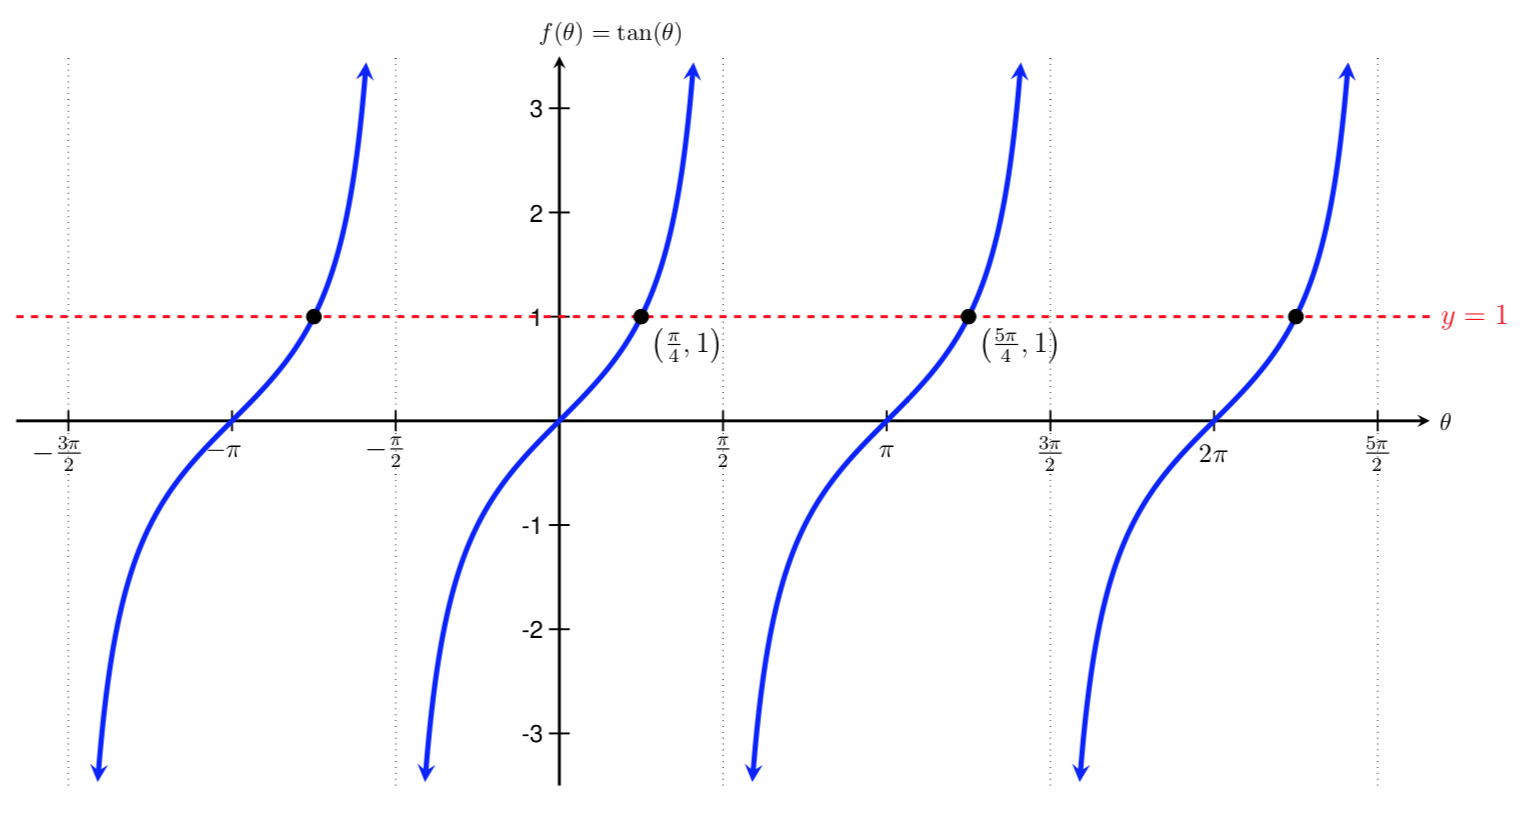 graph of tan(t)=1